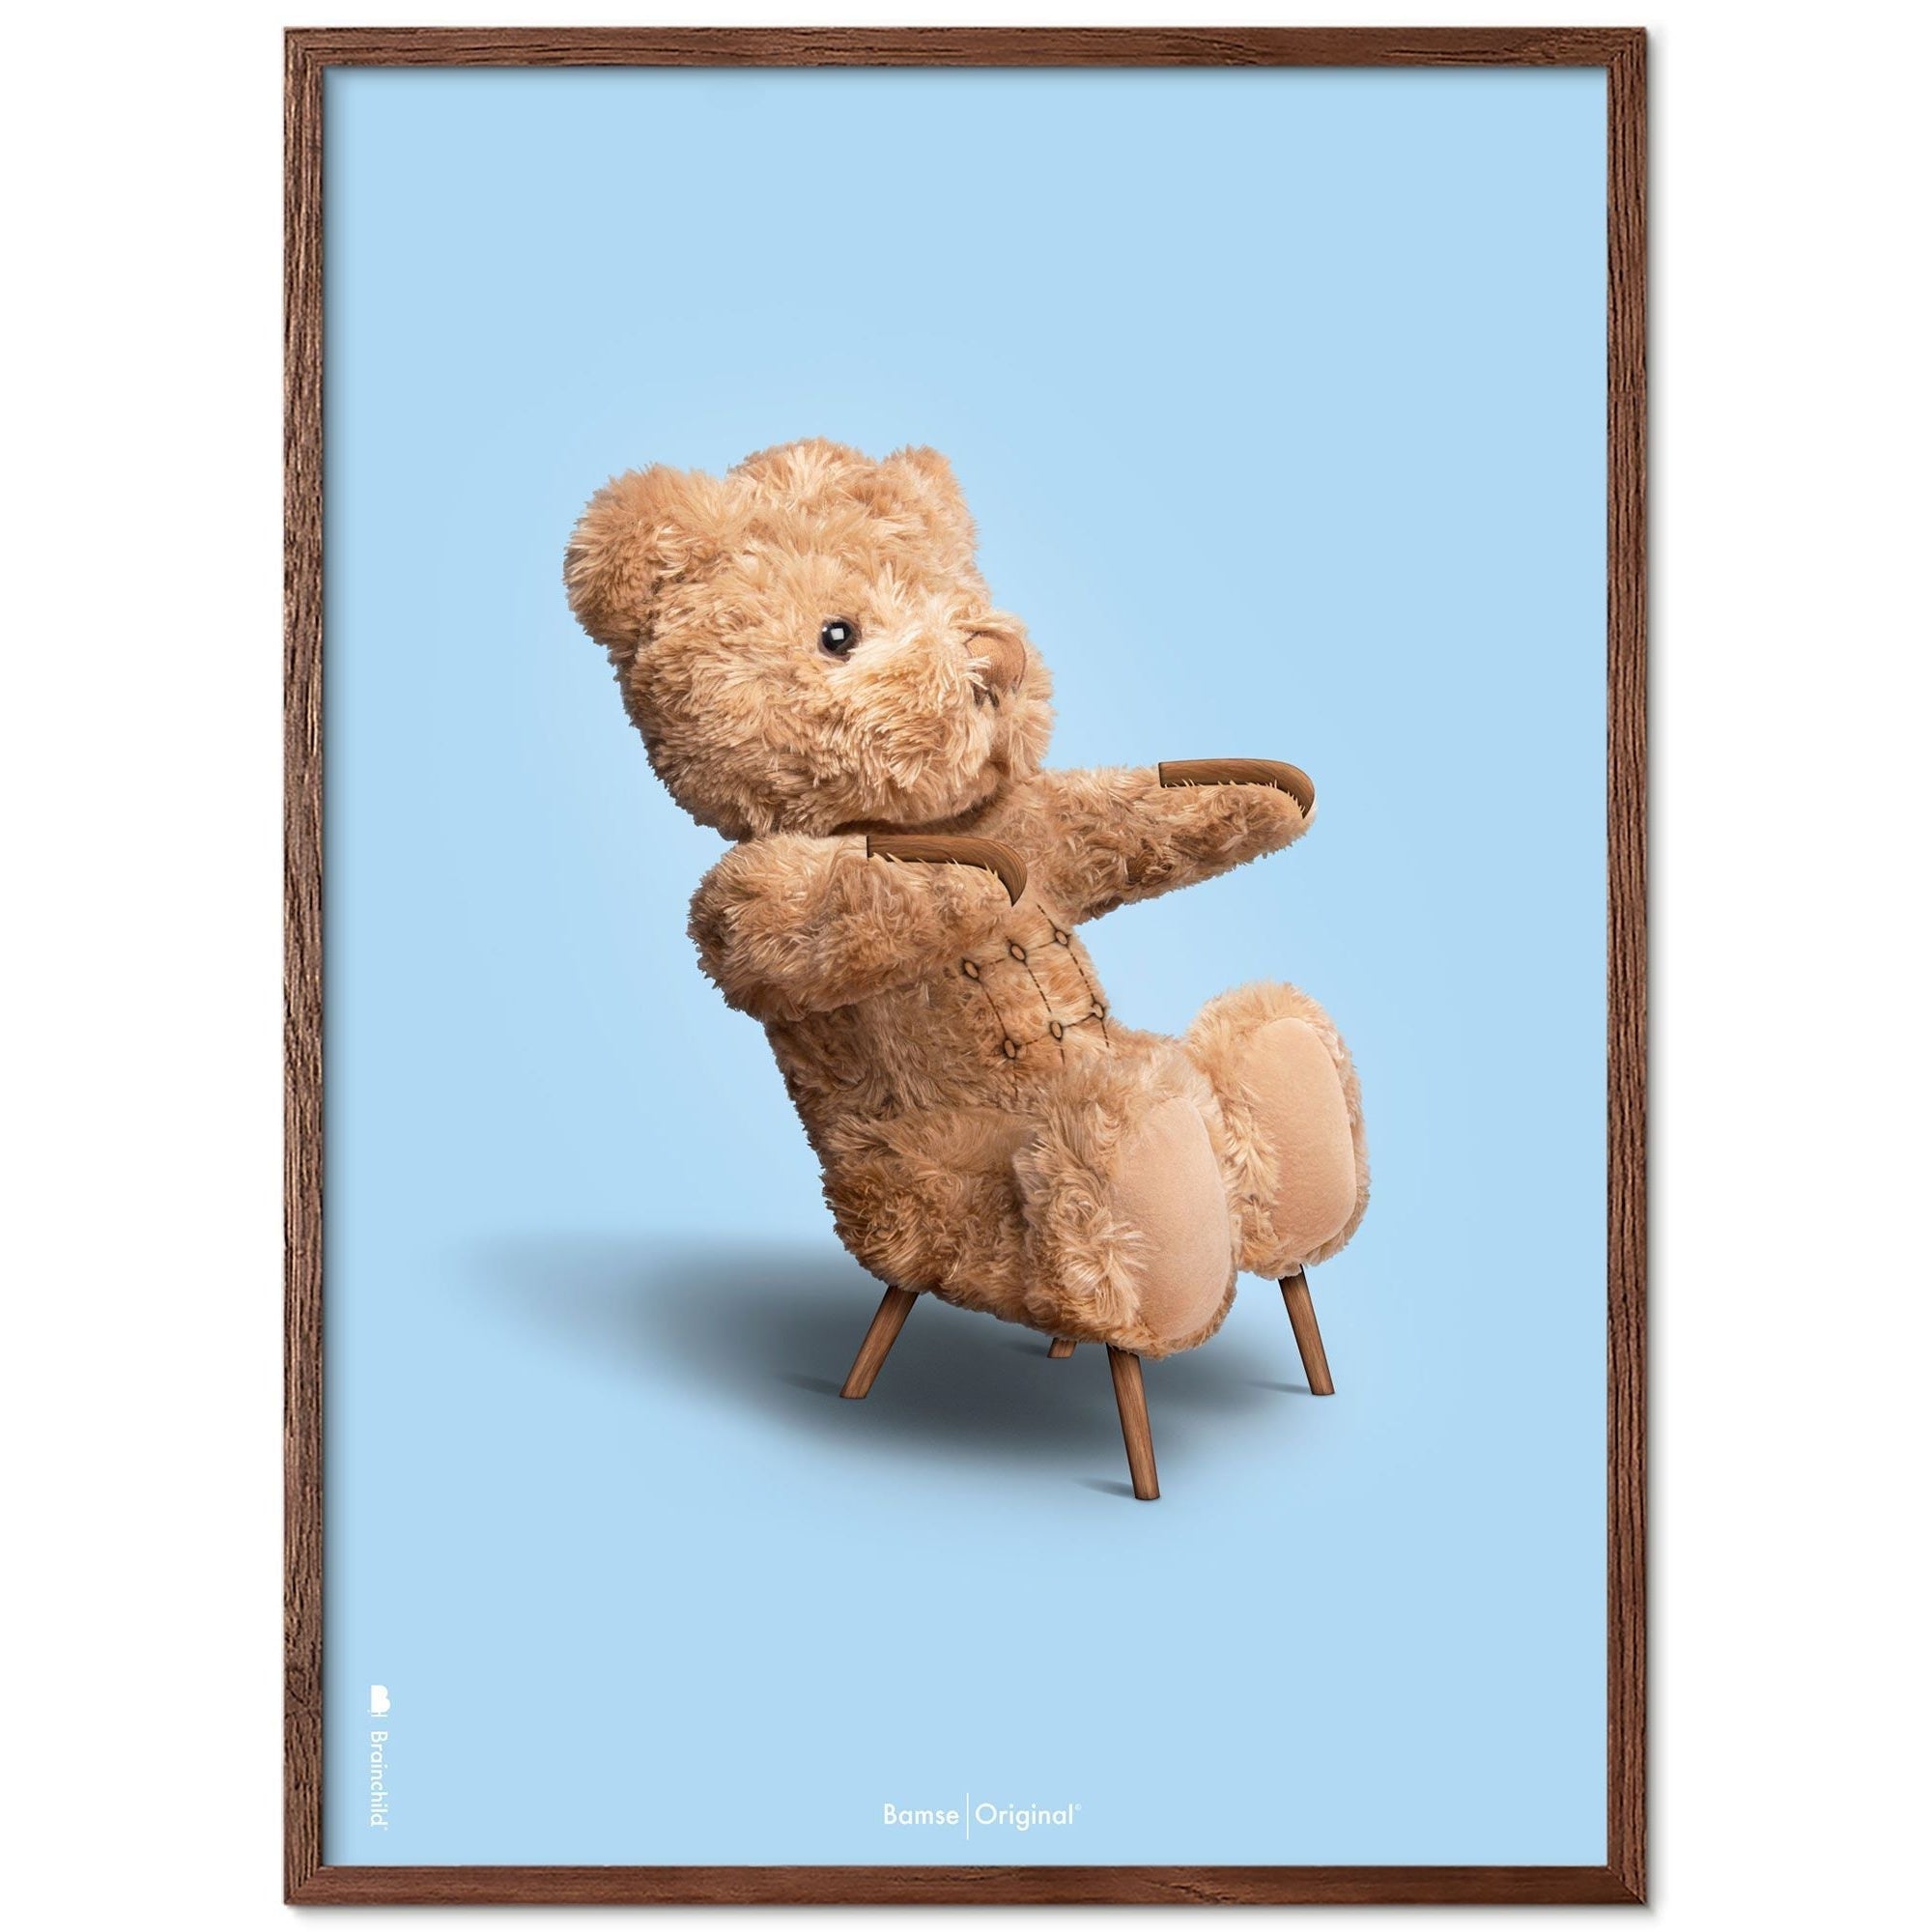 Brainchild Teddy Bear Classic Poster Frame lavet af Dark Wood Ram 70x100 cm, lyseblå baggrund